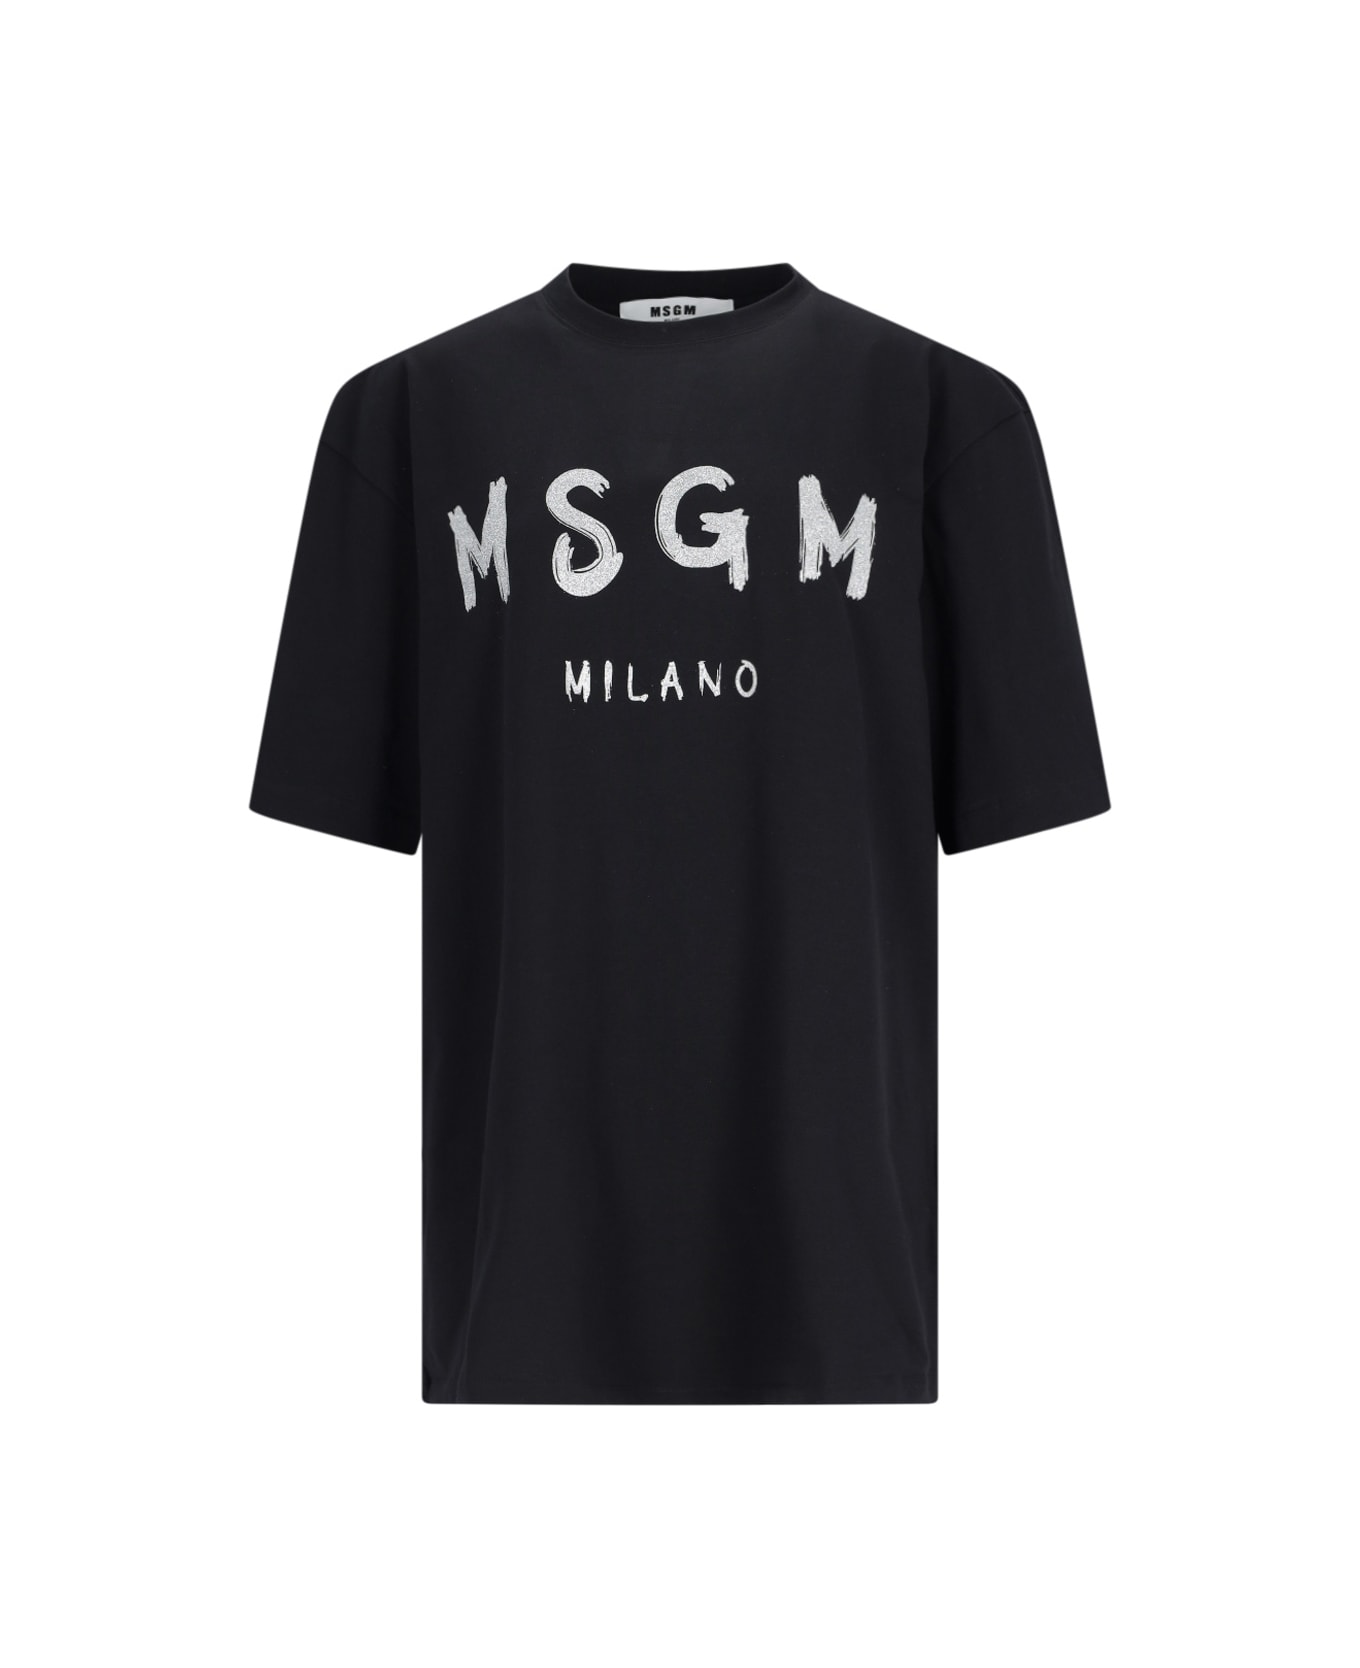 MSGM Printed T-shirt - Black  